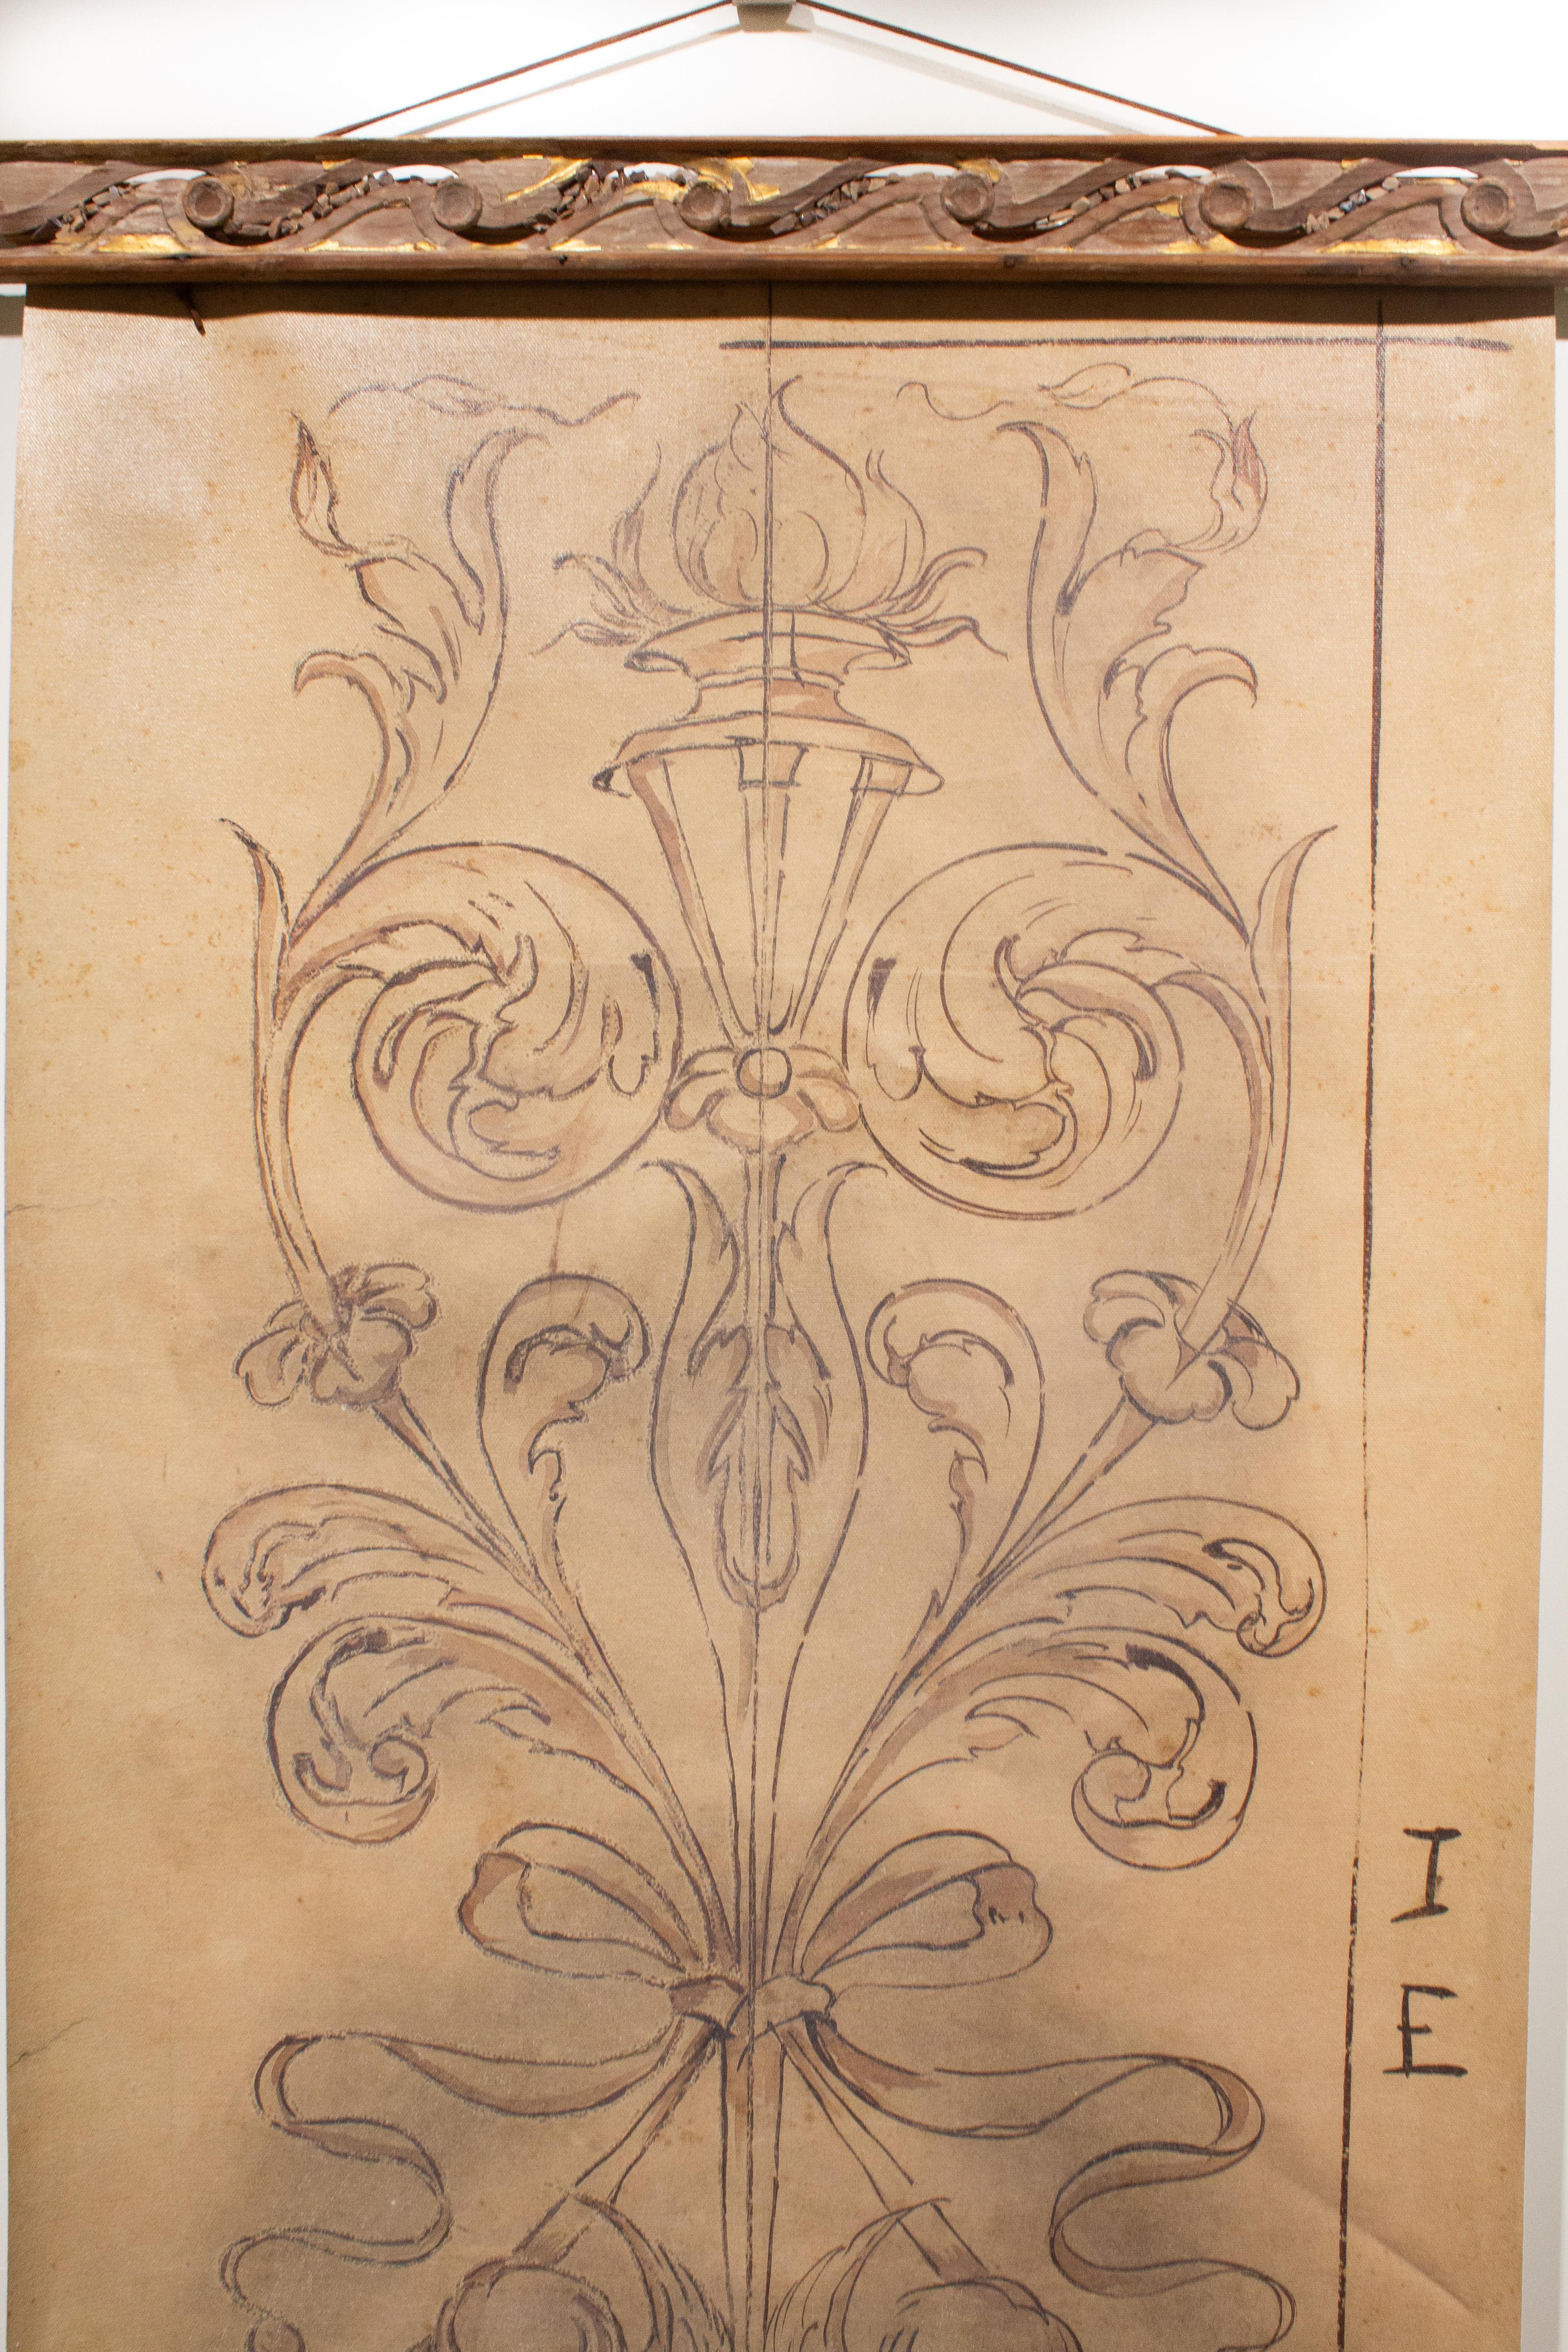 Italienisches Spolvero-Motiv aus dem 18. Jahrhundert, gedruckt auf Leinwand, gerahmt mit einem antiken Schnörkelrahmen und verziert mit fossilen Achatkorallen.

Spolvero ist eine künstlerische Methode zur Übertragung eines Designs von einem Druck